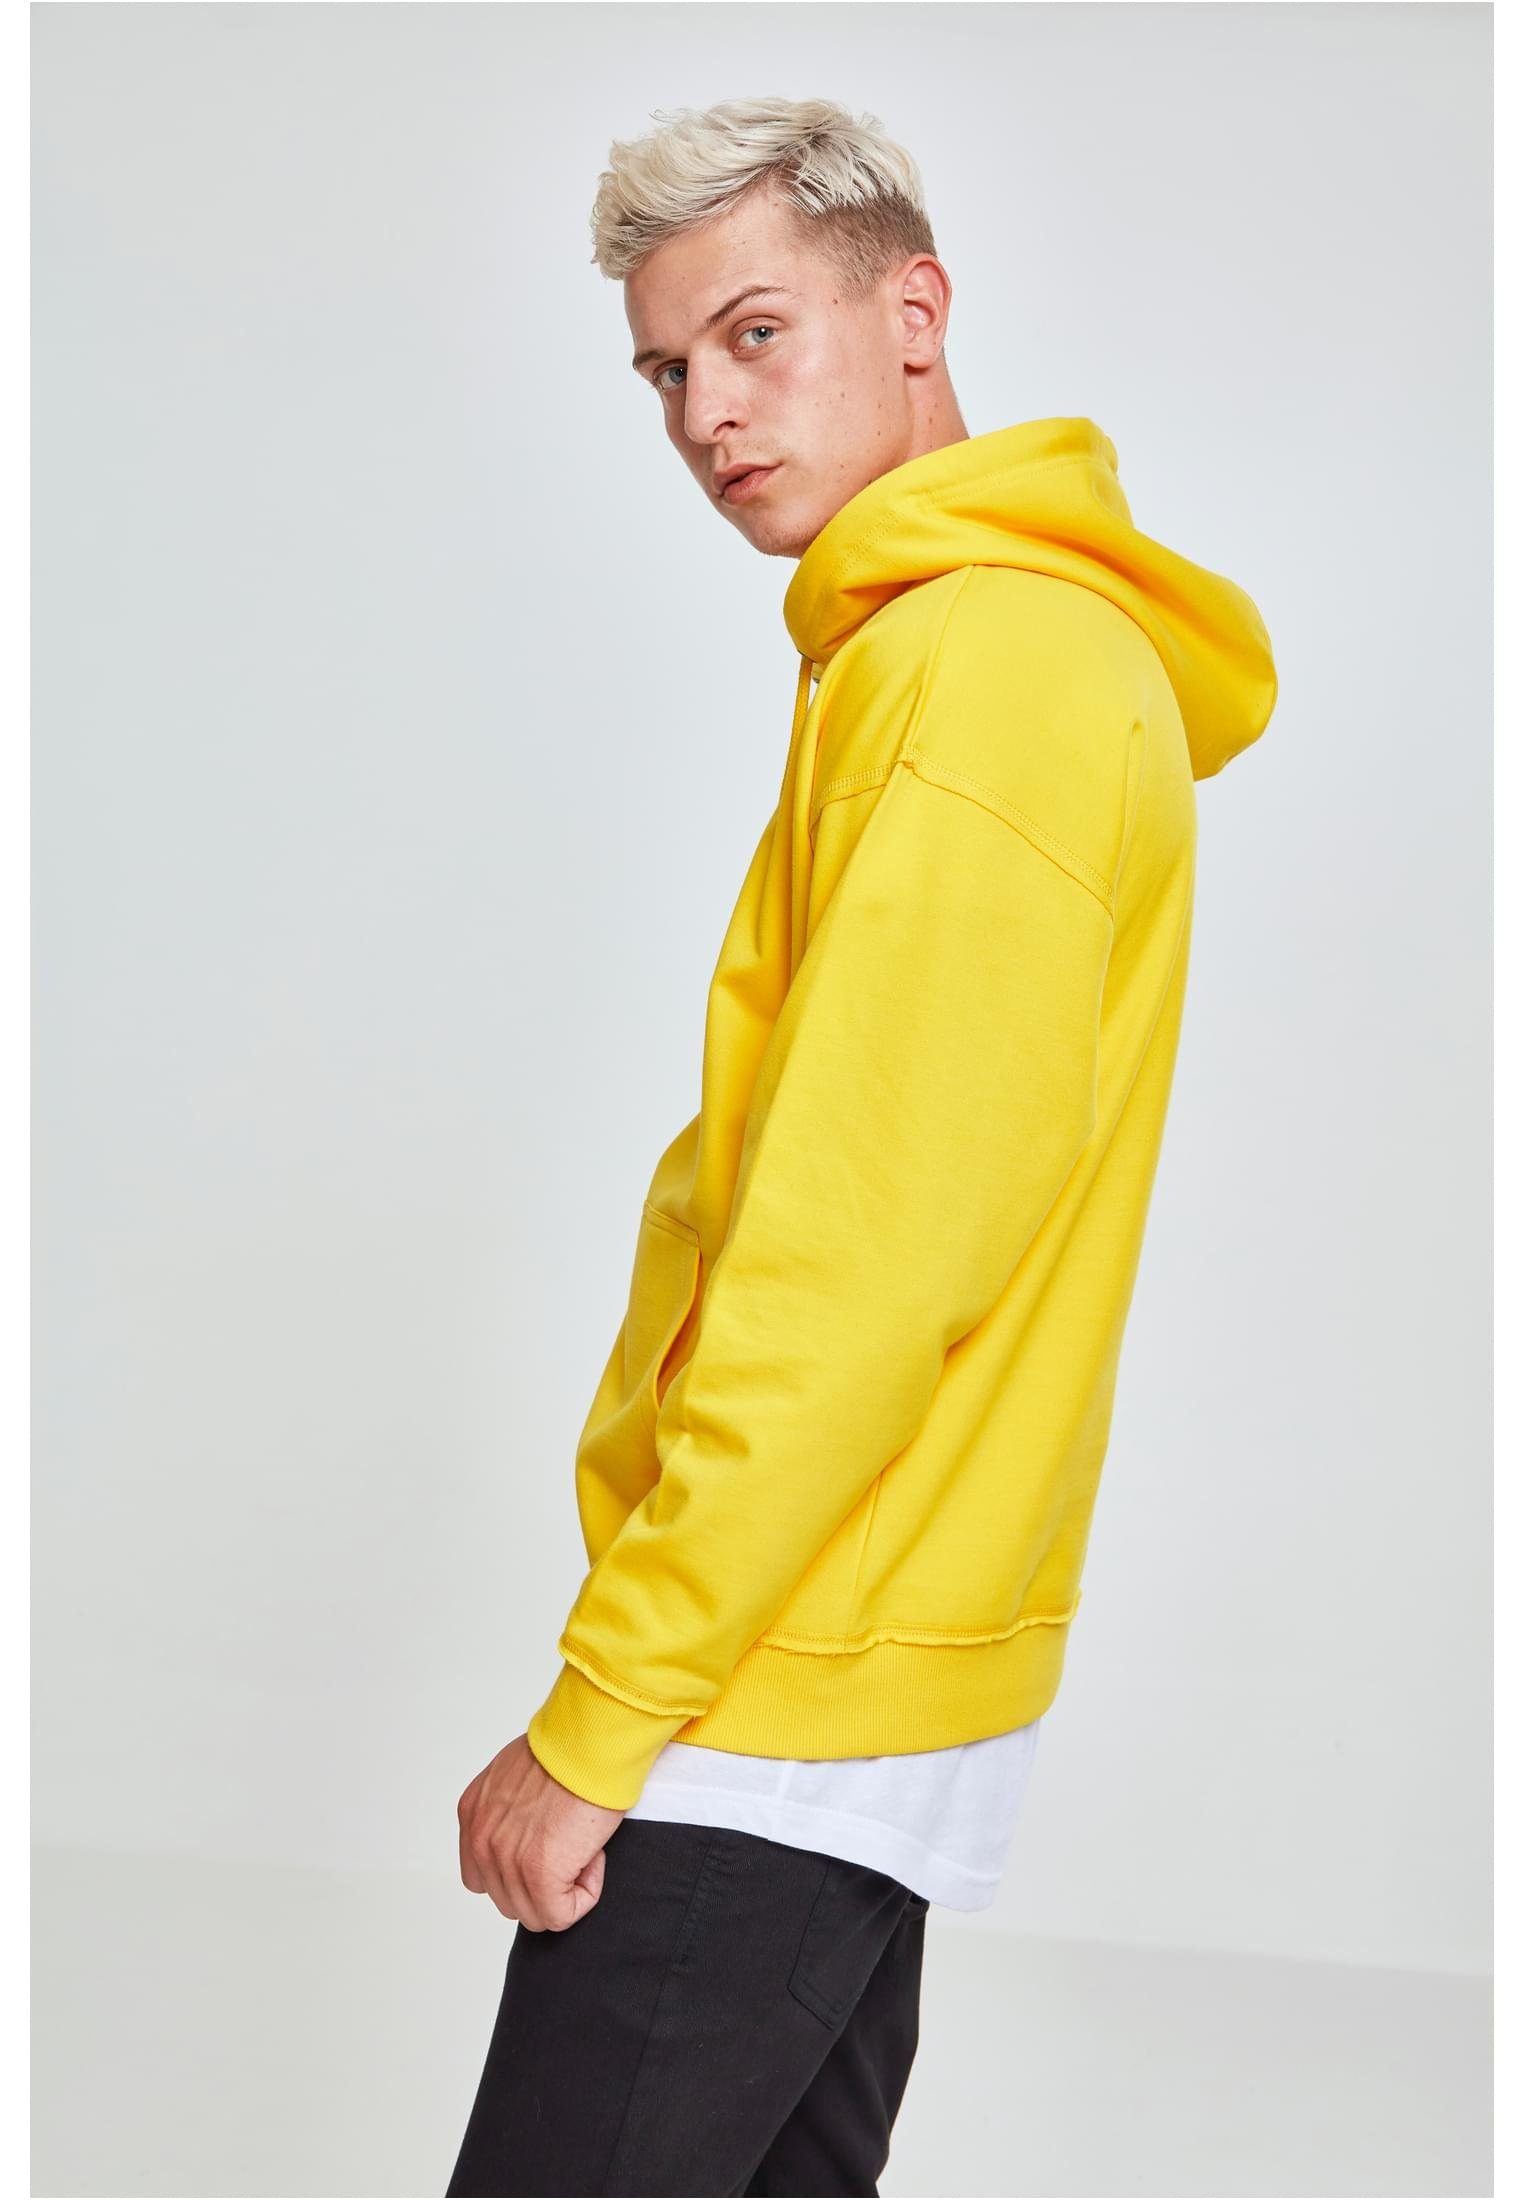 Hoody Oversized (1-tlg) URBAN chrome CLASSICS Herren Sweat yellow Sweater